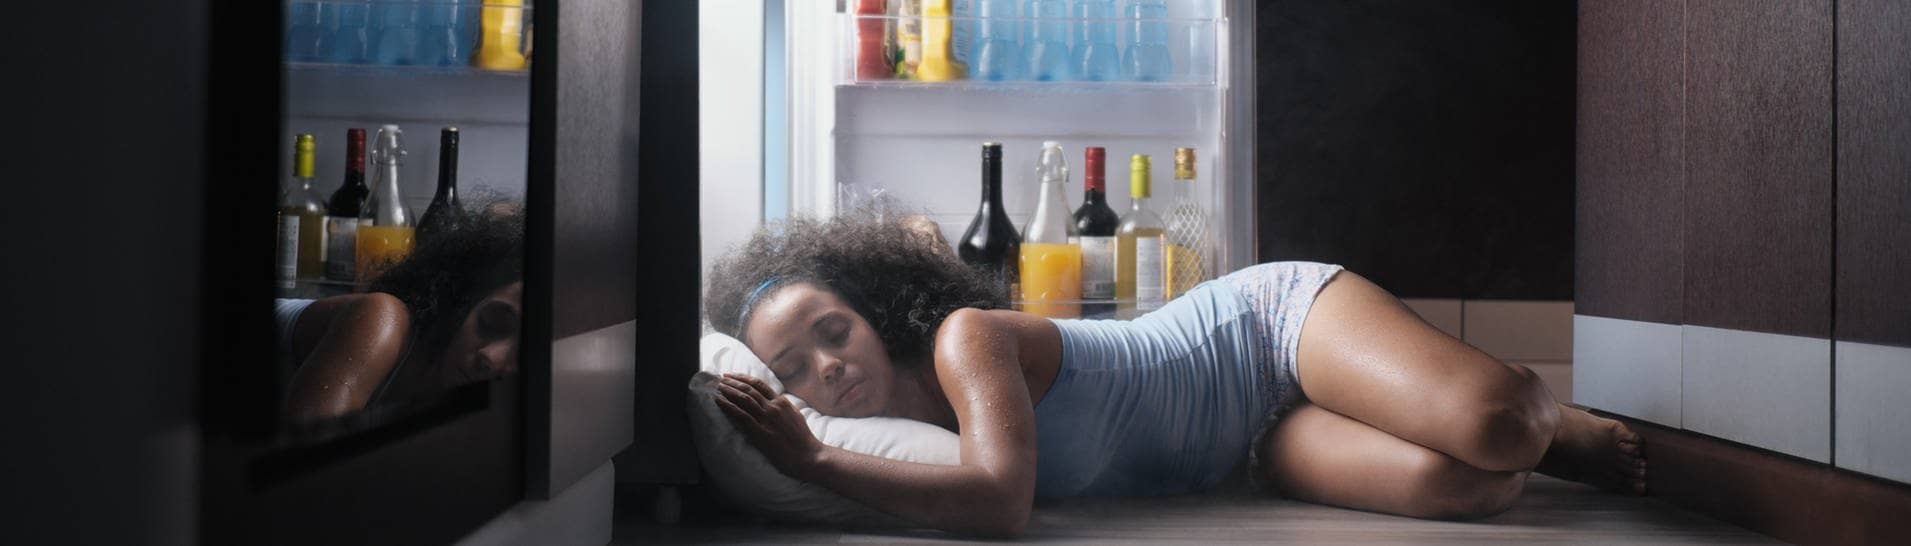 Nicht der beste Tipp: Eine Frau versucht bei der Hitze mit Kopfkissen vor dem Kühlschrank zu schlafen.